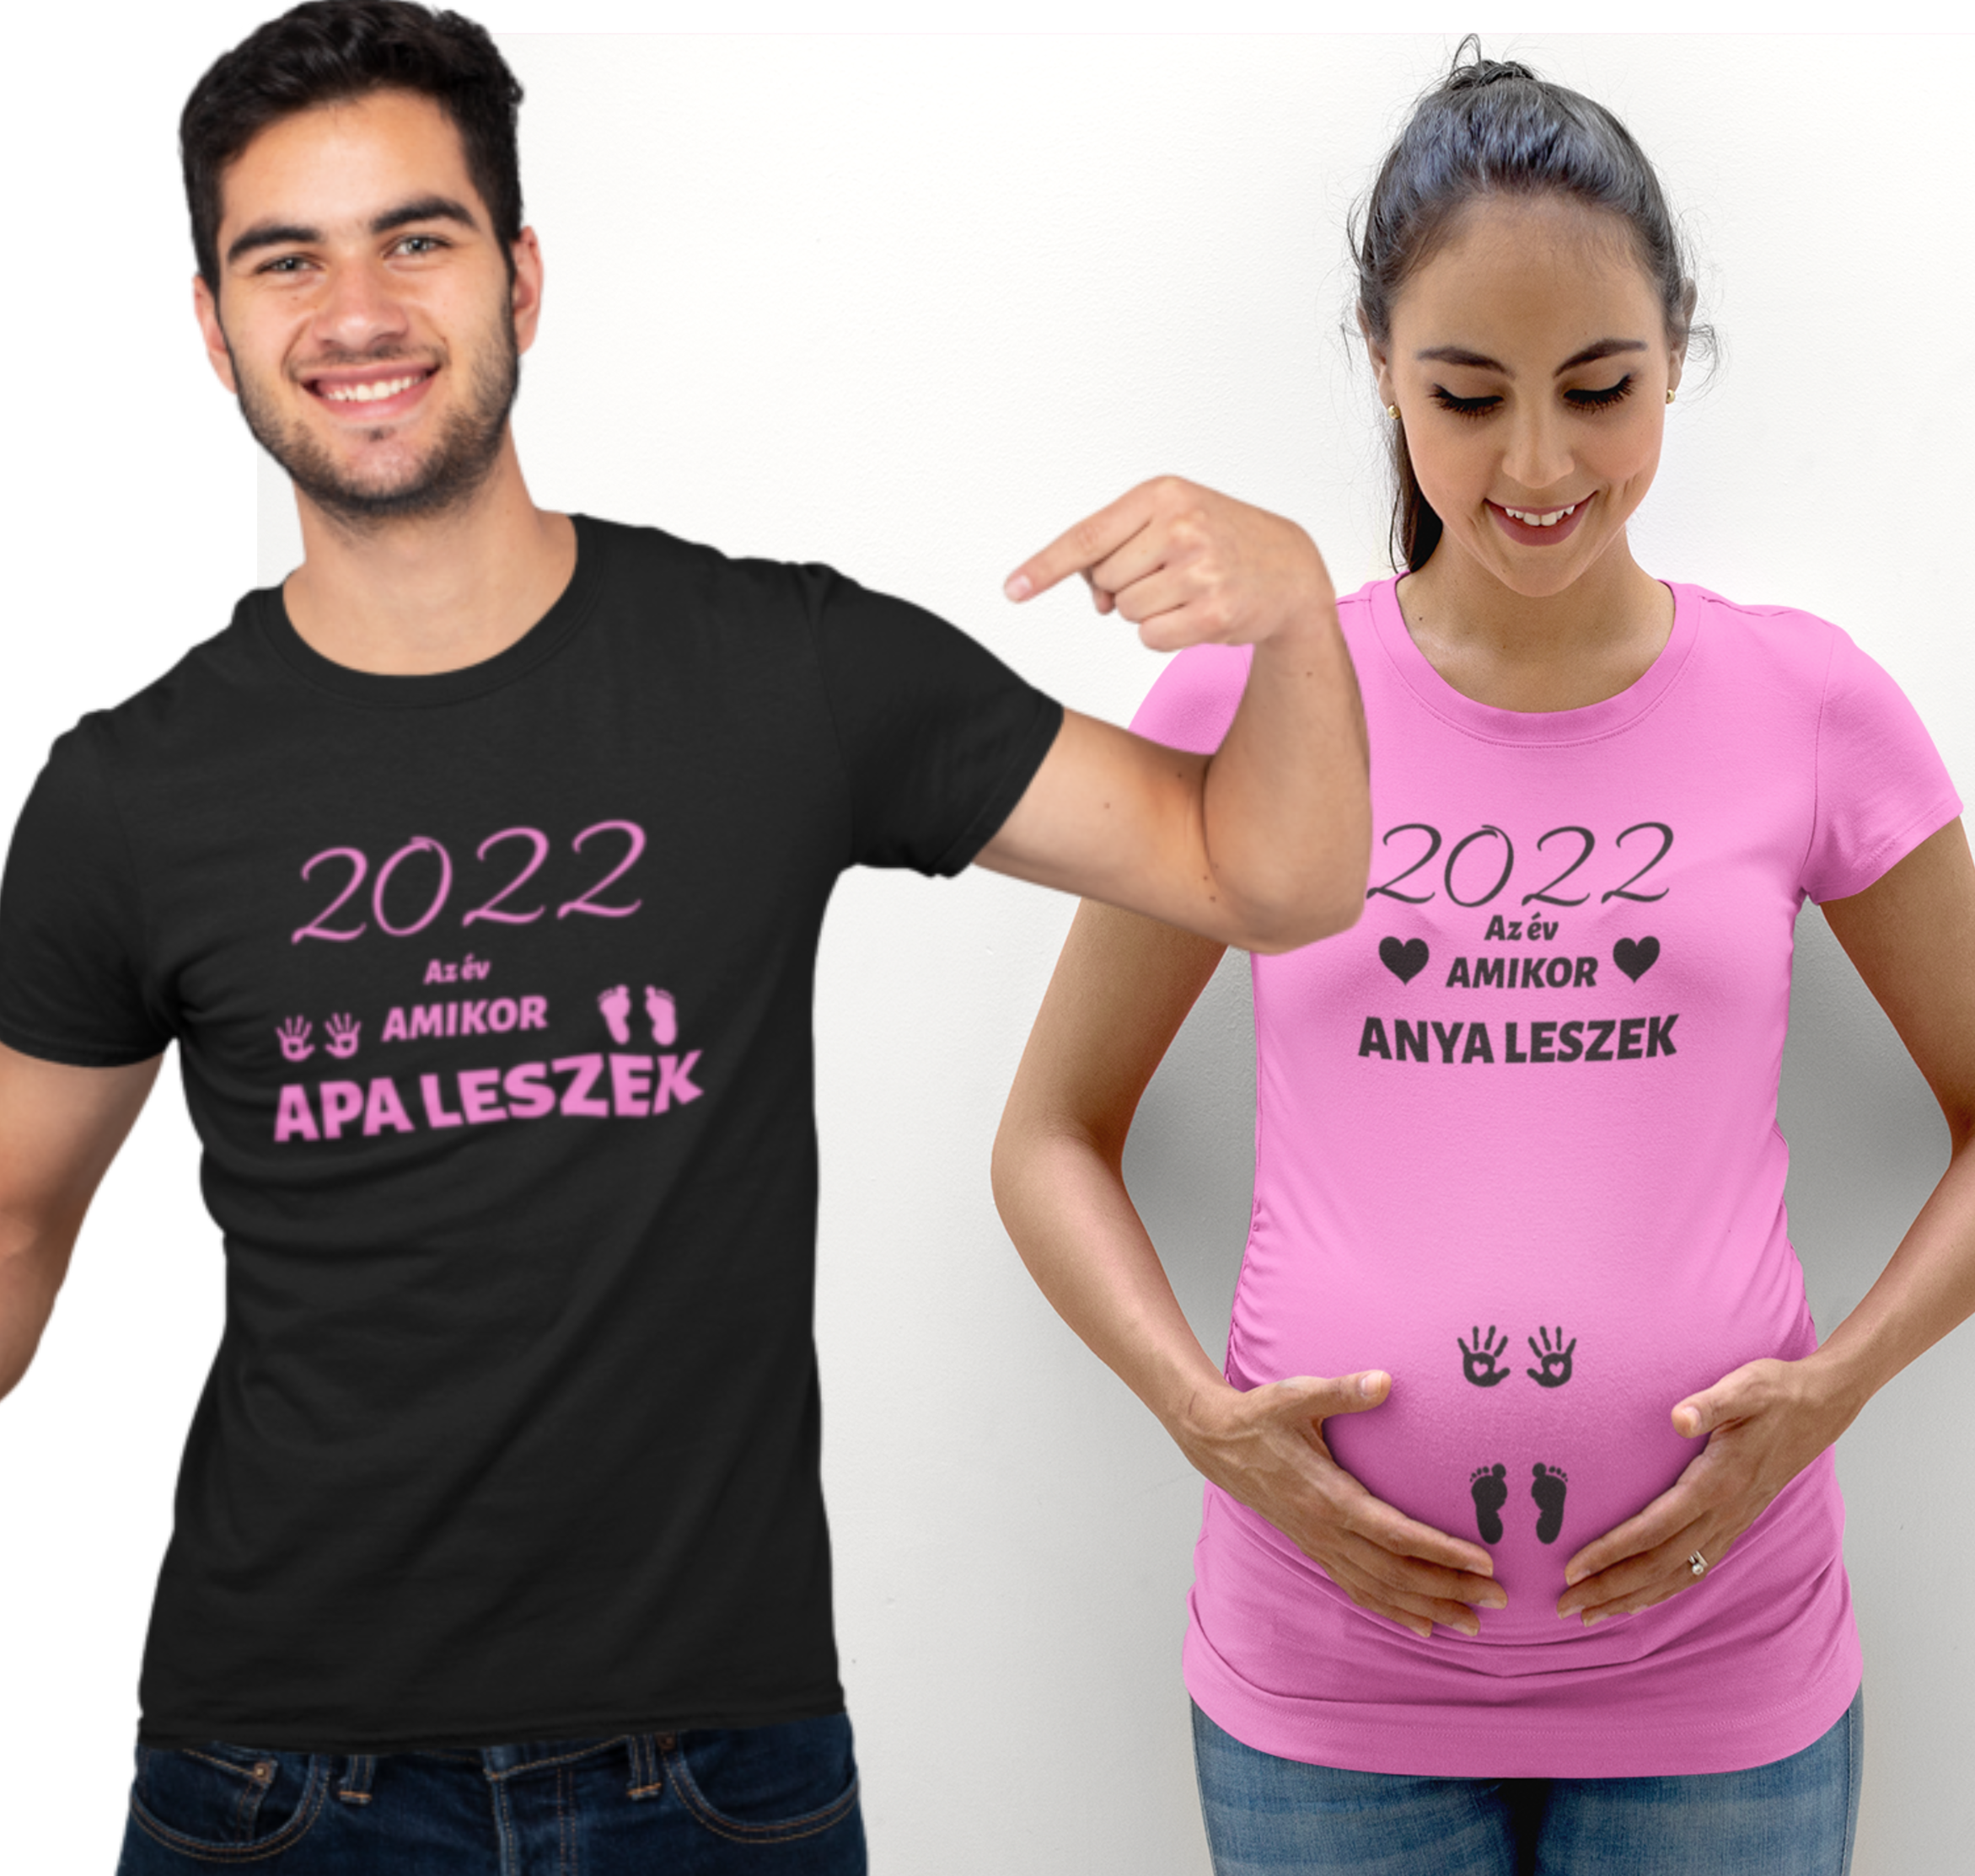 2022 az év amikor anya leszek/ 2022 az év amikor apa leszek (r,f)(2 db póló)